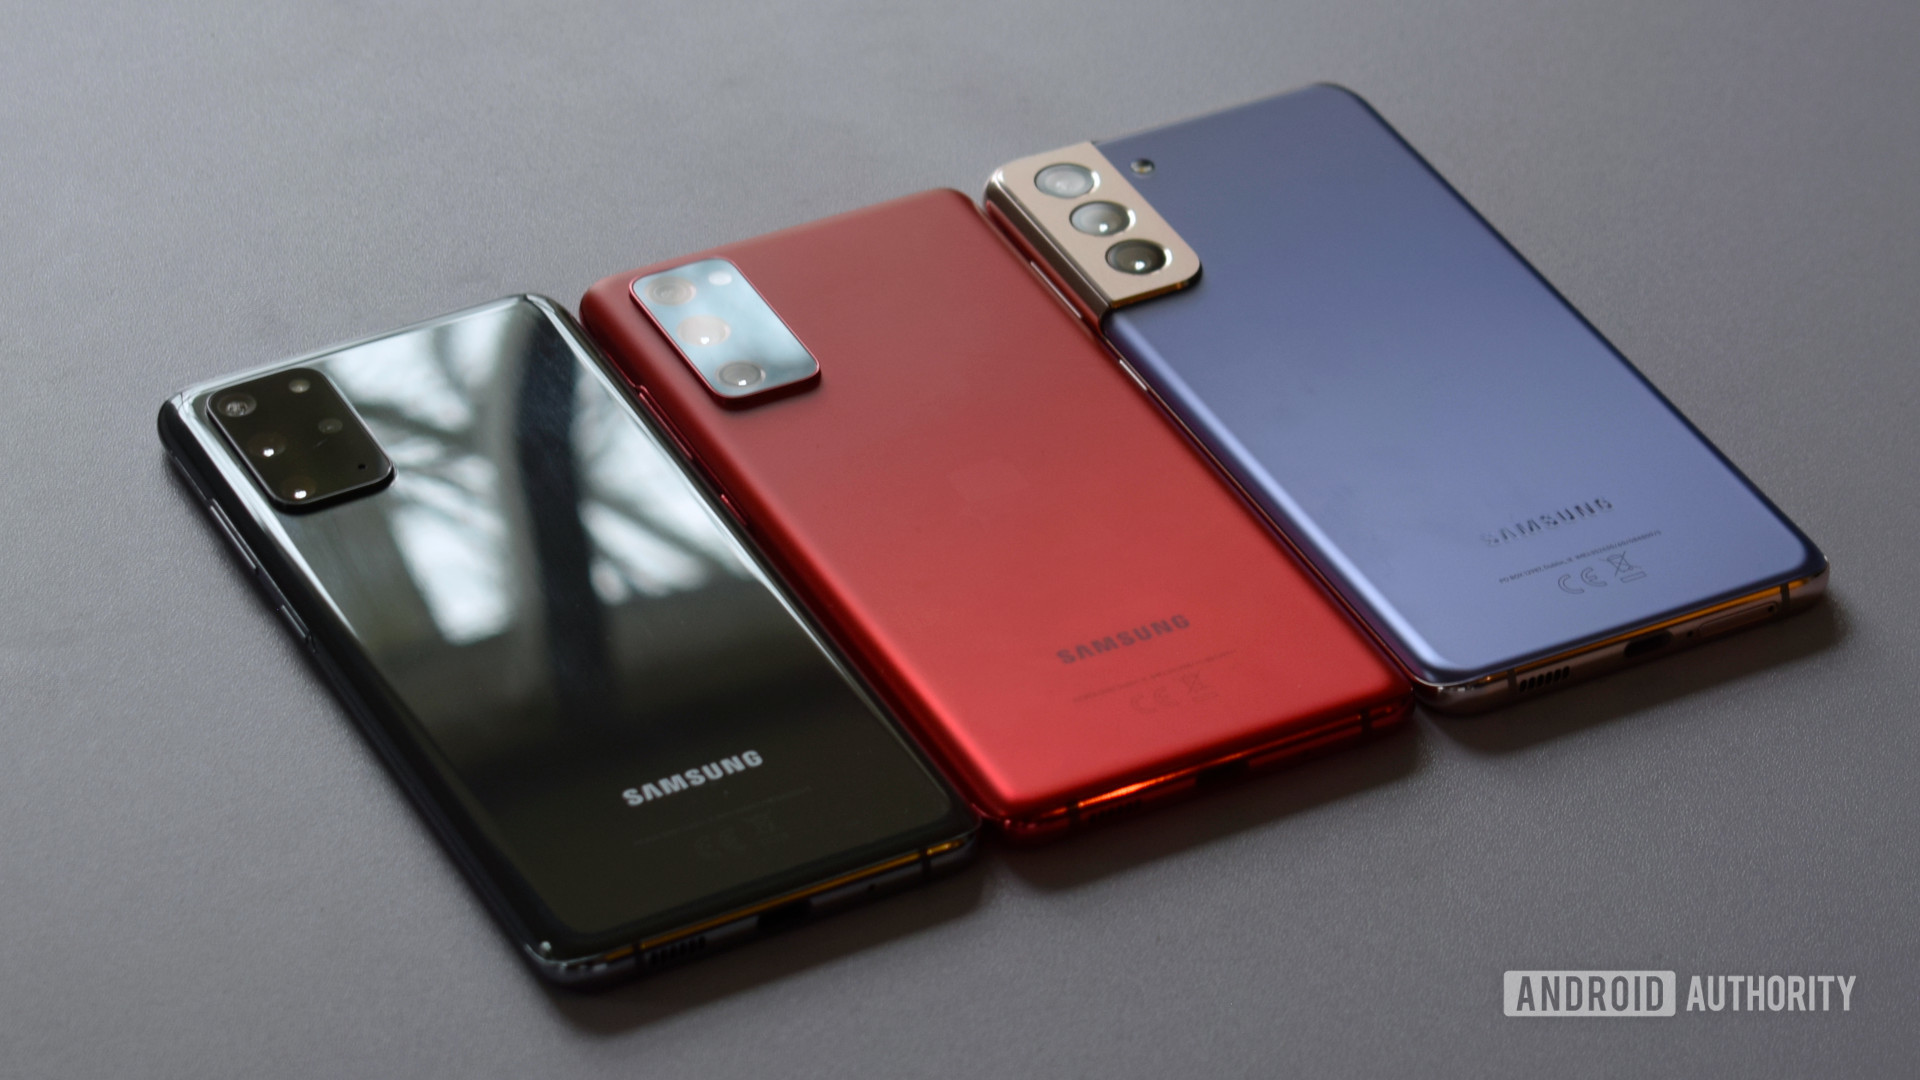 Samsung Galaxy S21 Plus and Galaxy S20 Plus and Galaxy S20 FE